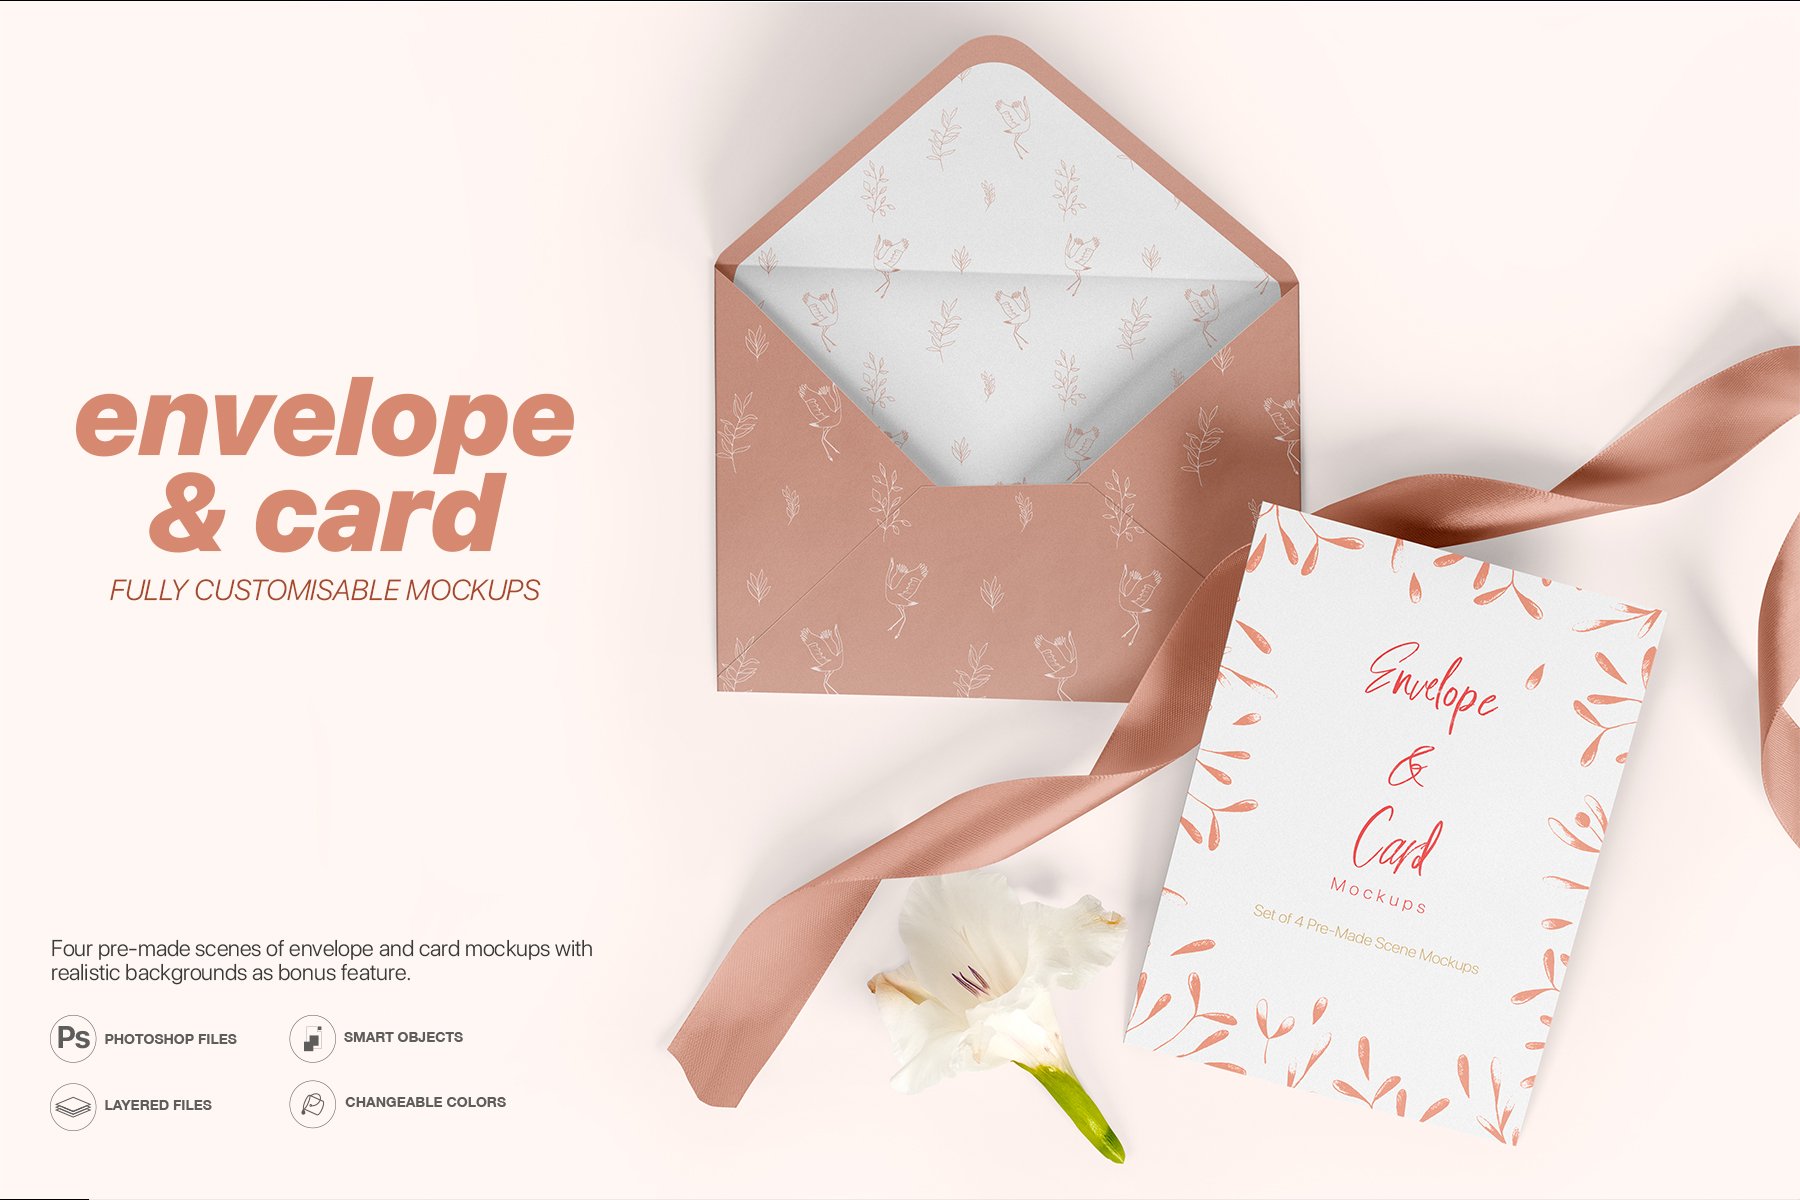 Envelope and Card Mockups Set - A5 Size